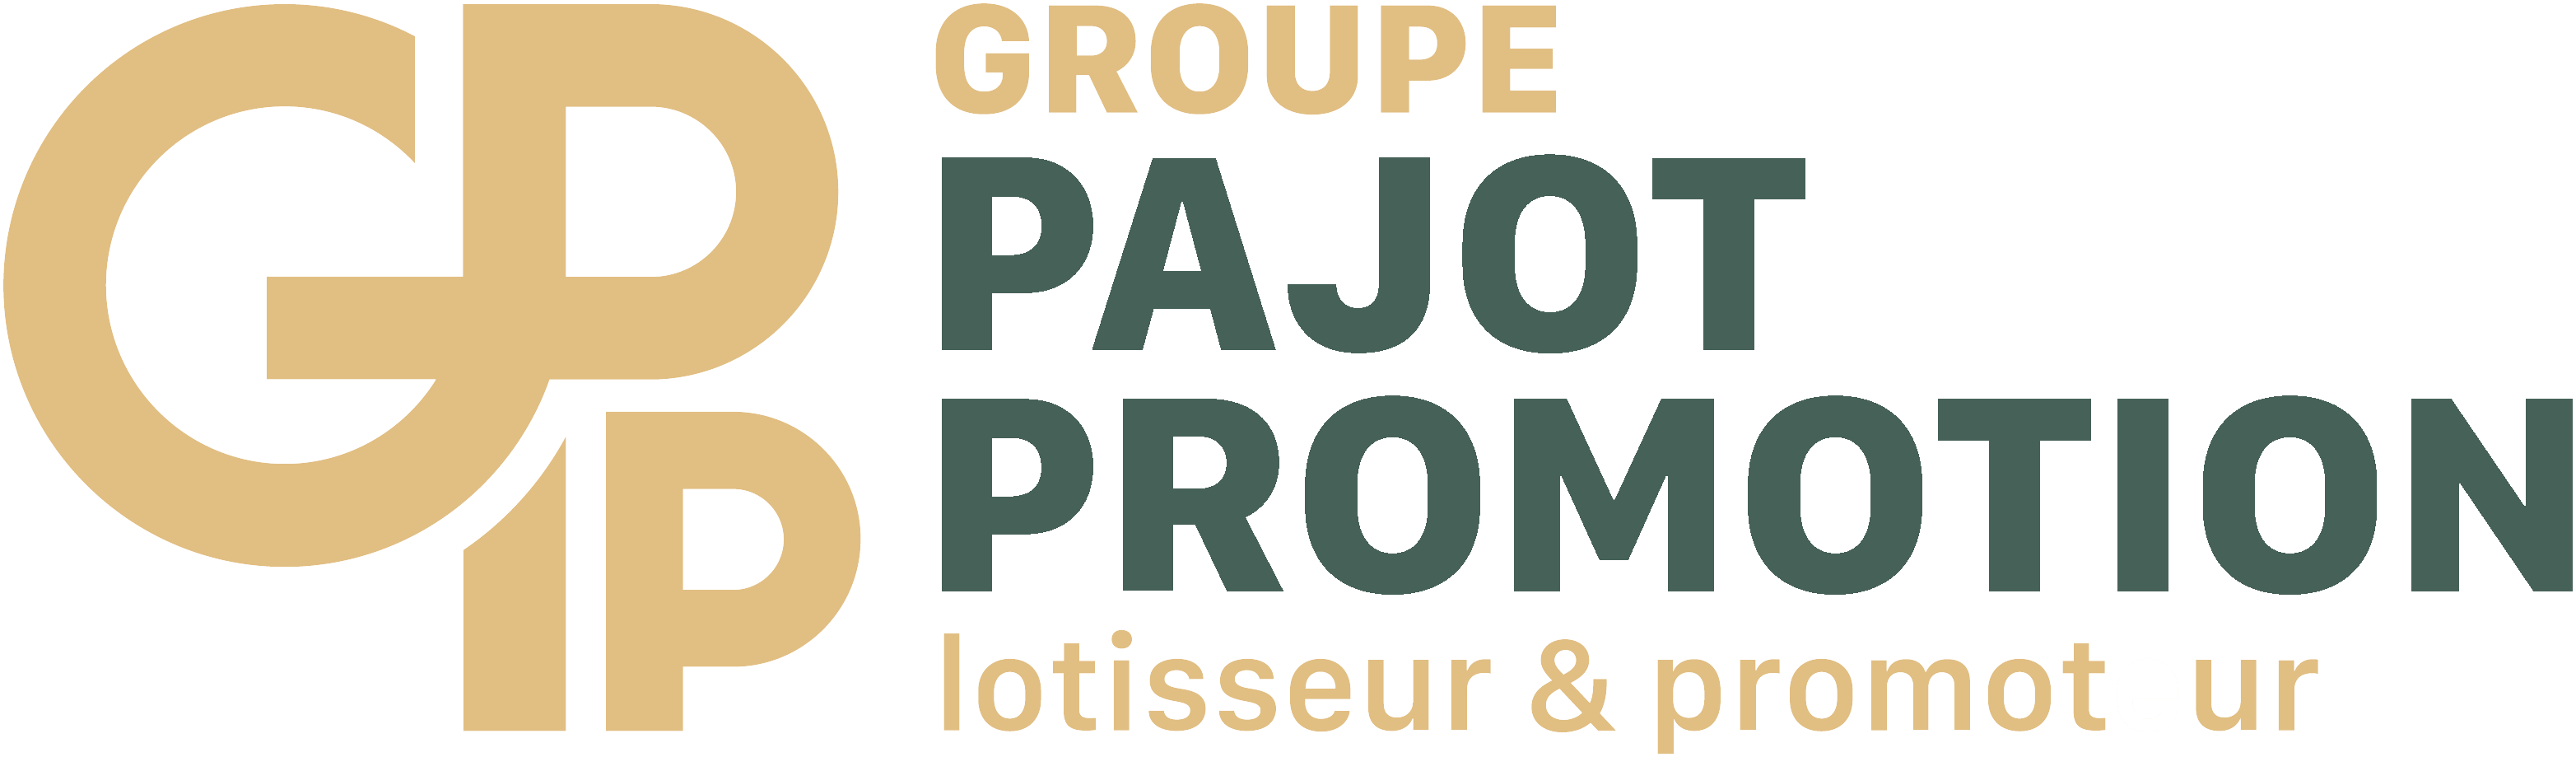 Pajot Promotion - Les Iris - Toit